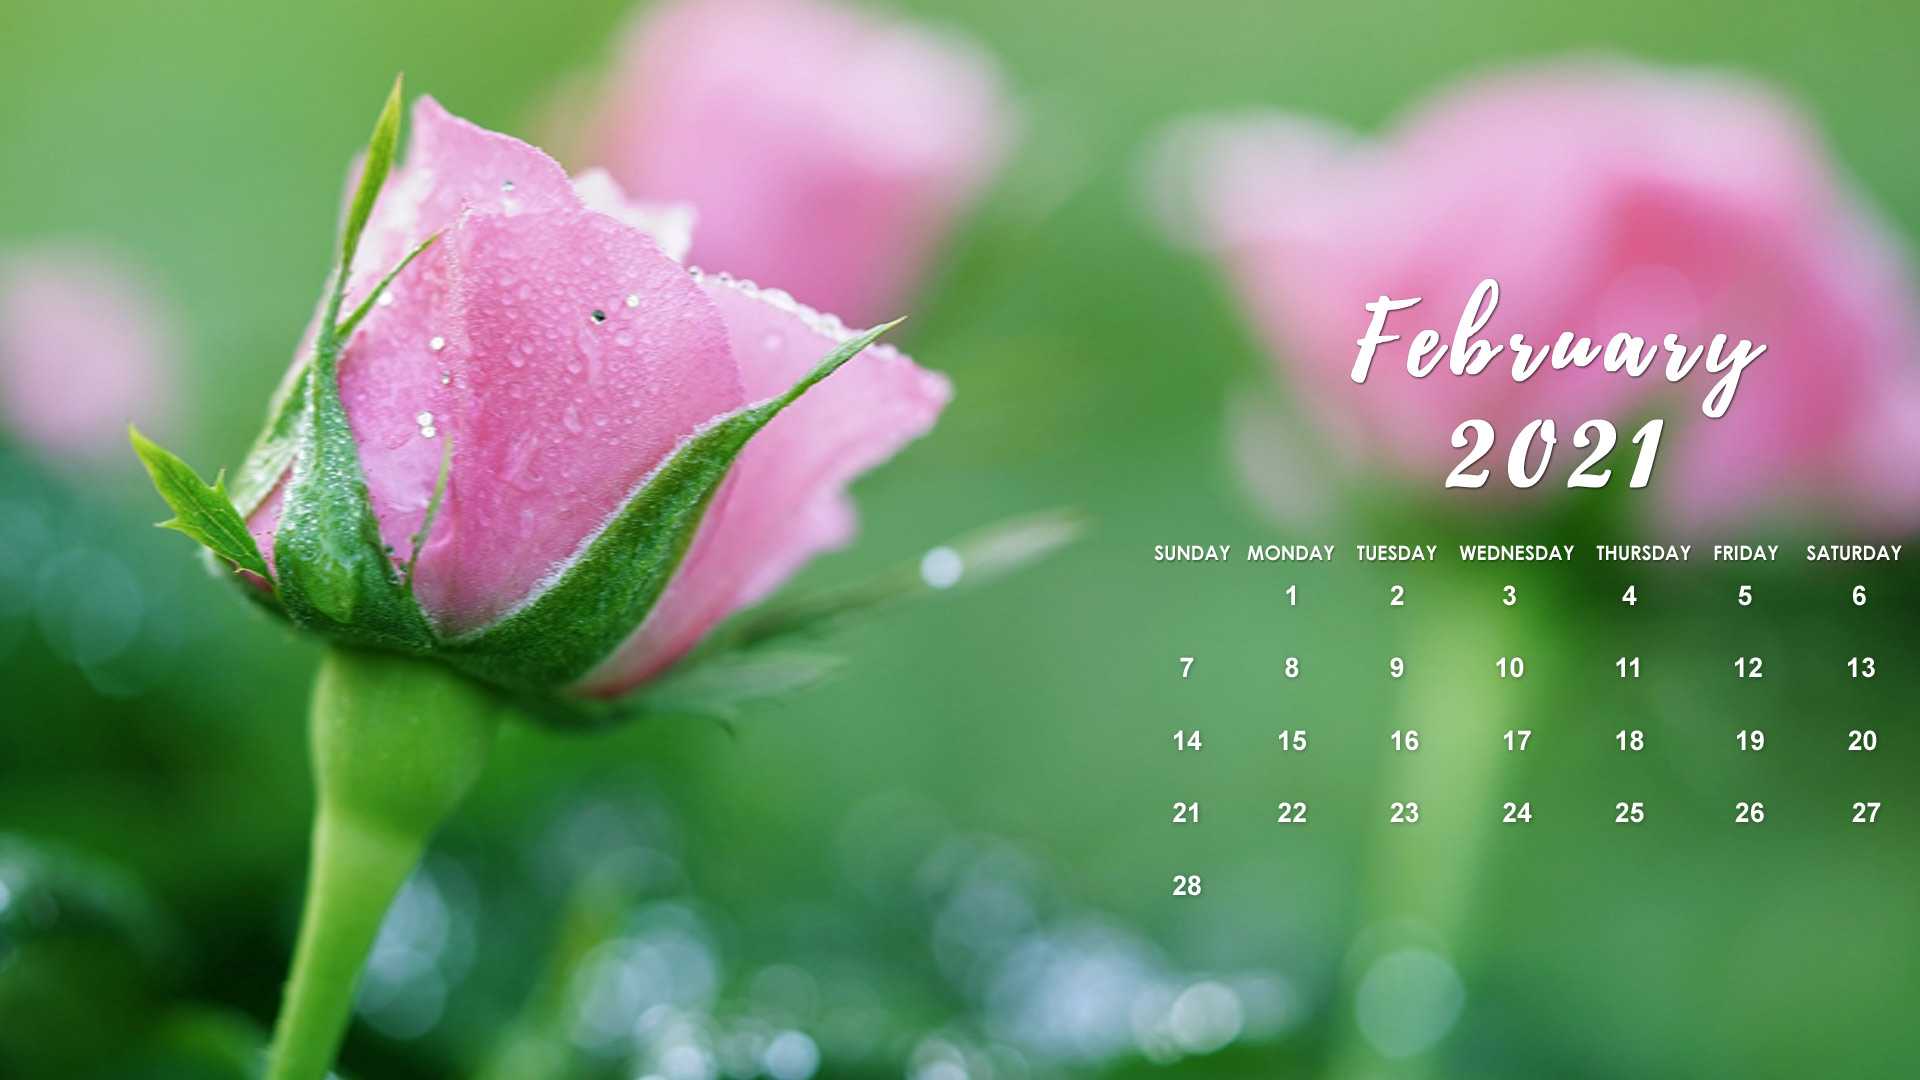 February 2021 Phone Wallpaper : February 2021 Flowers Desktop Calendar Free February Wallpaper ...